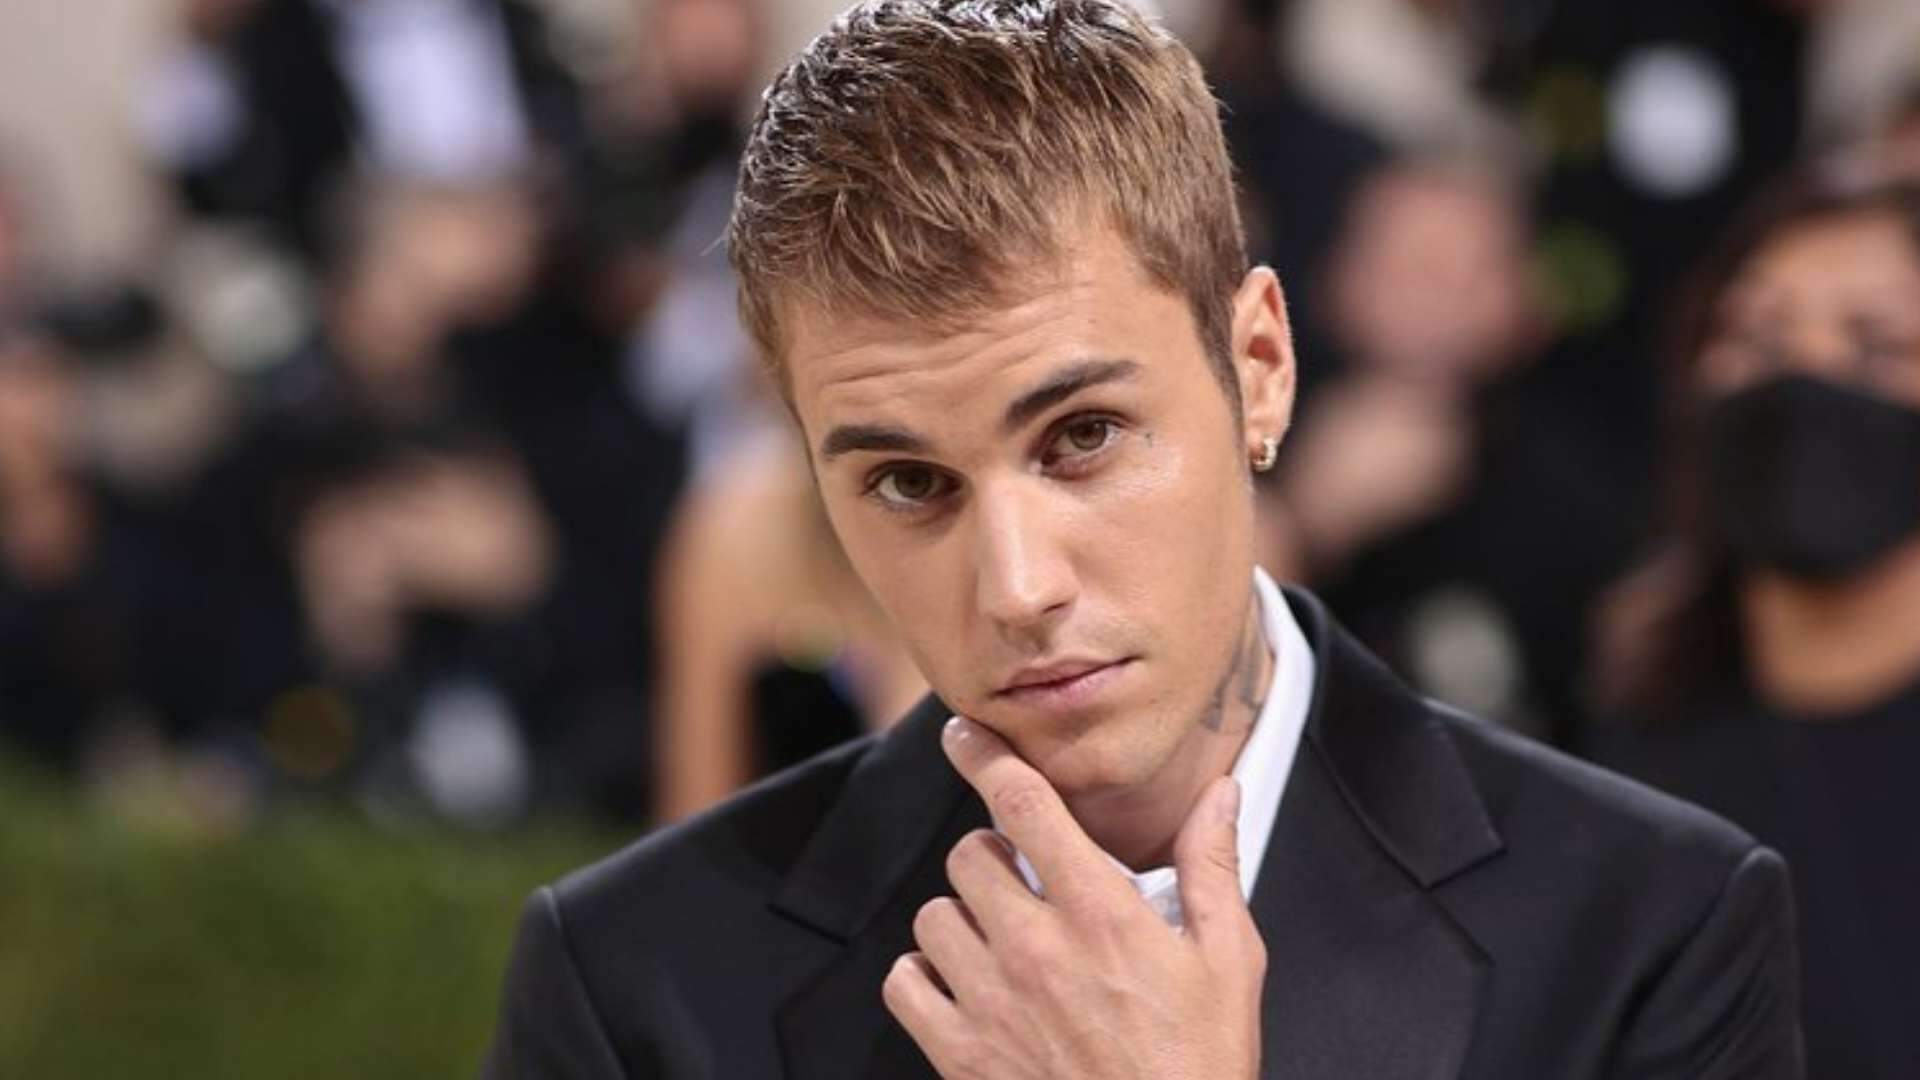 Equipe de Justin Bieber deixa fãs tristes e preocupados ao fazer anúncio sobre saúde do cantor - Metropolitana FM